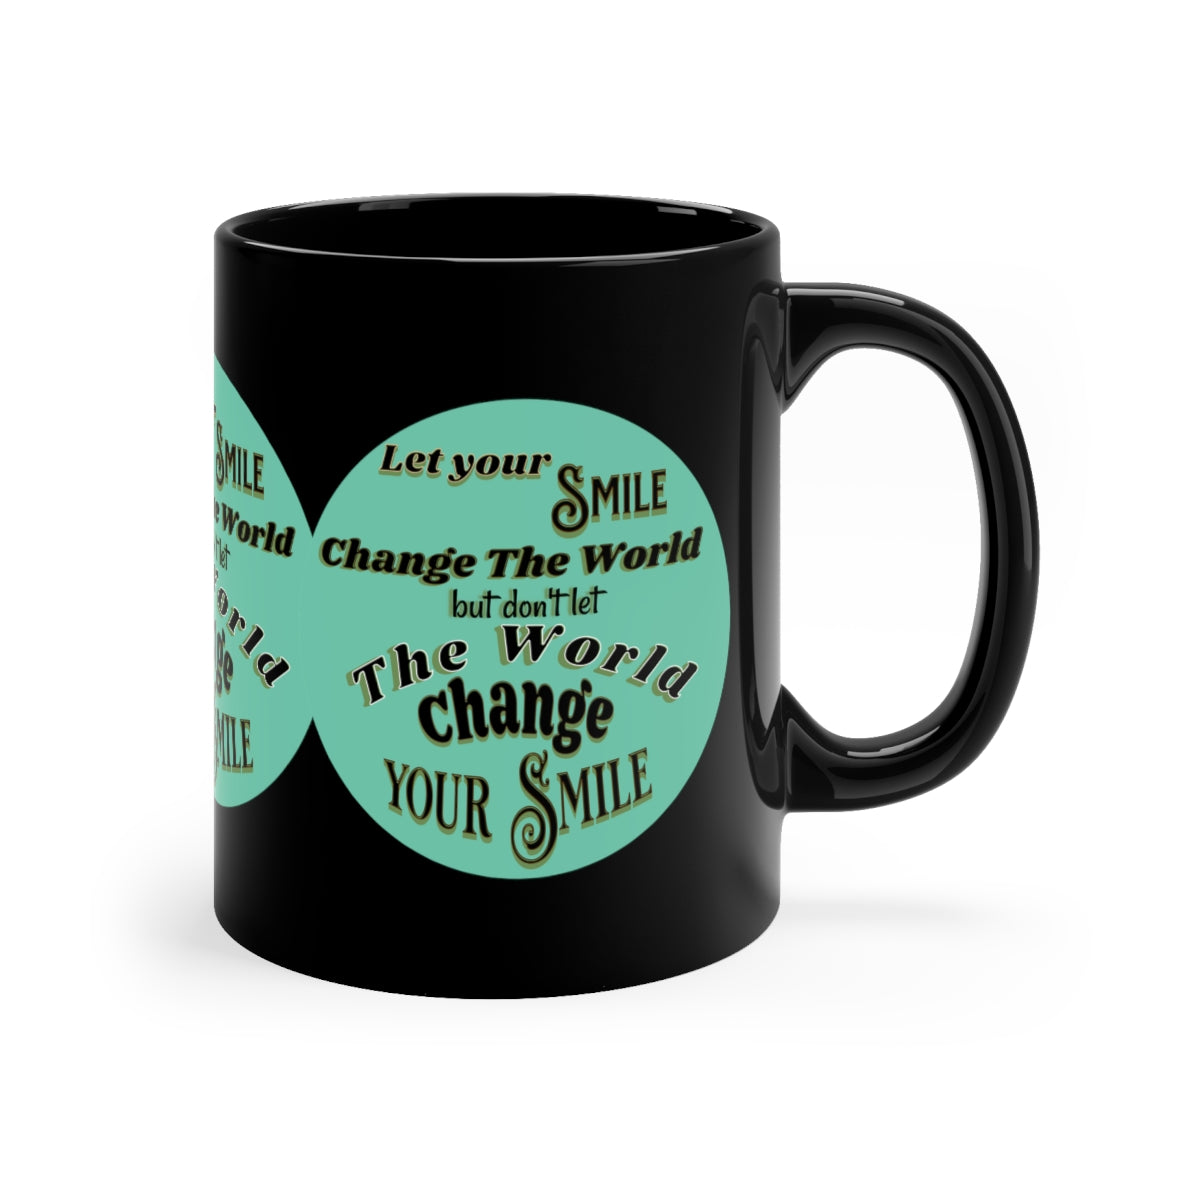 Let Your Smile Change the World - 11oz Black Mug